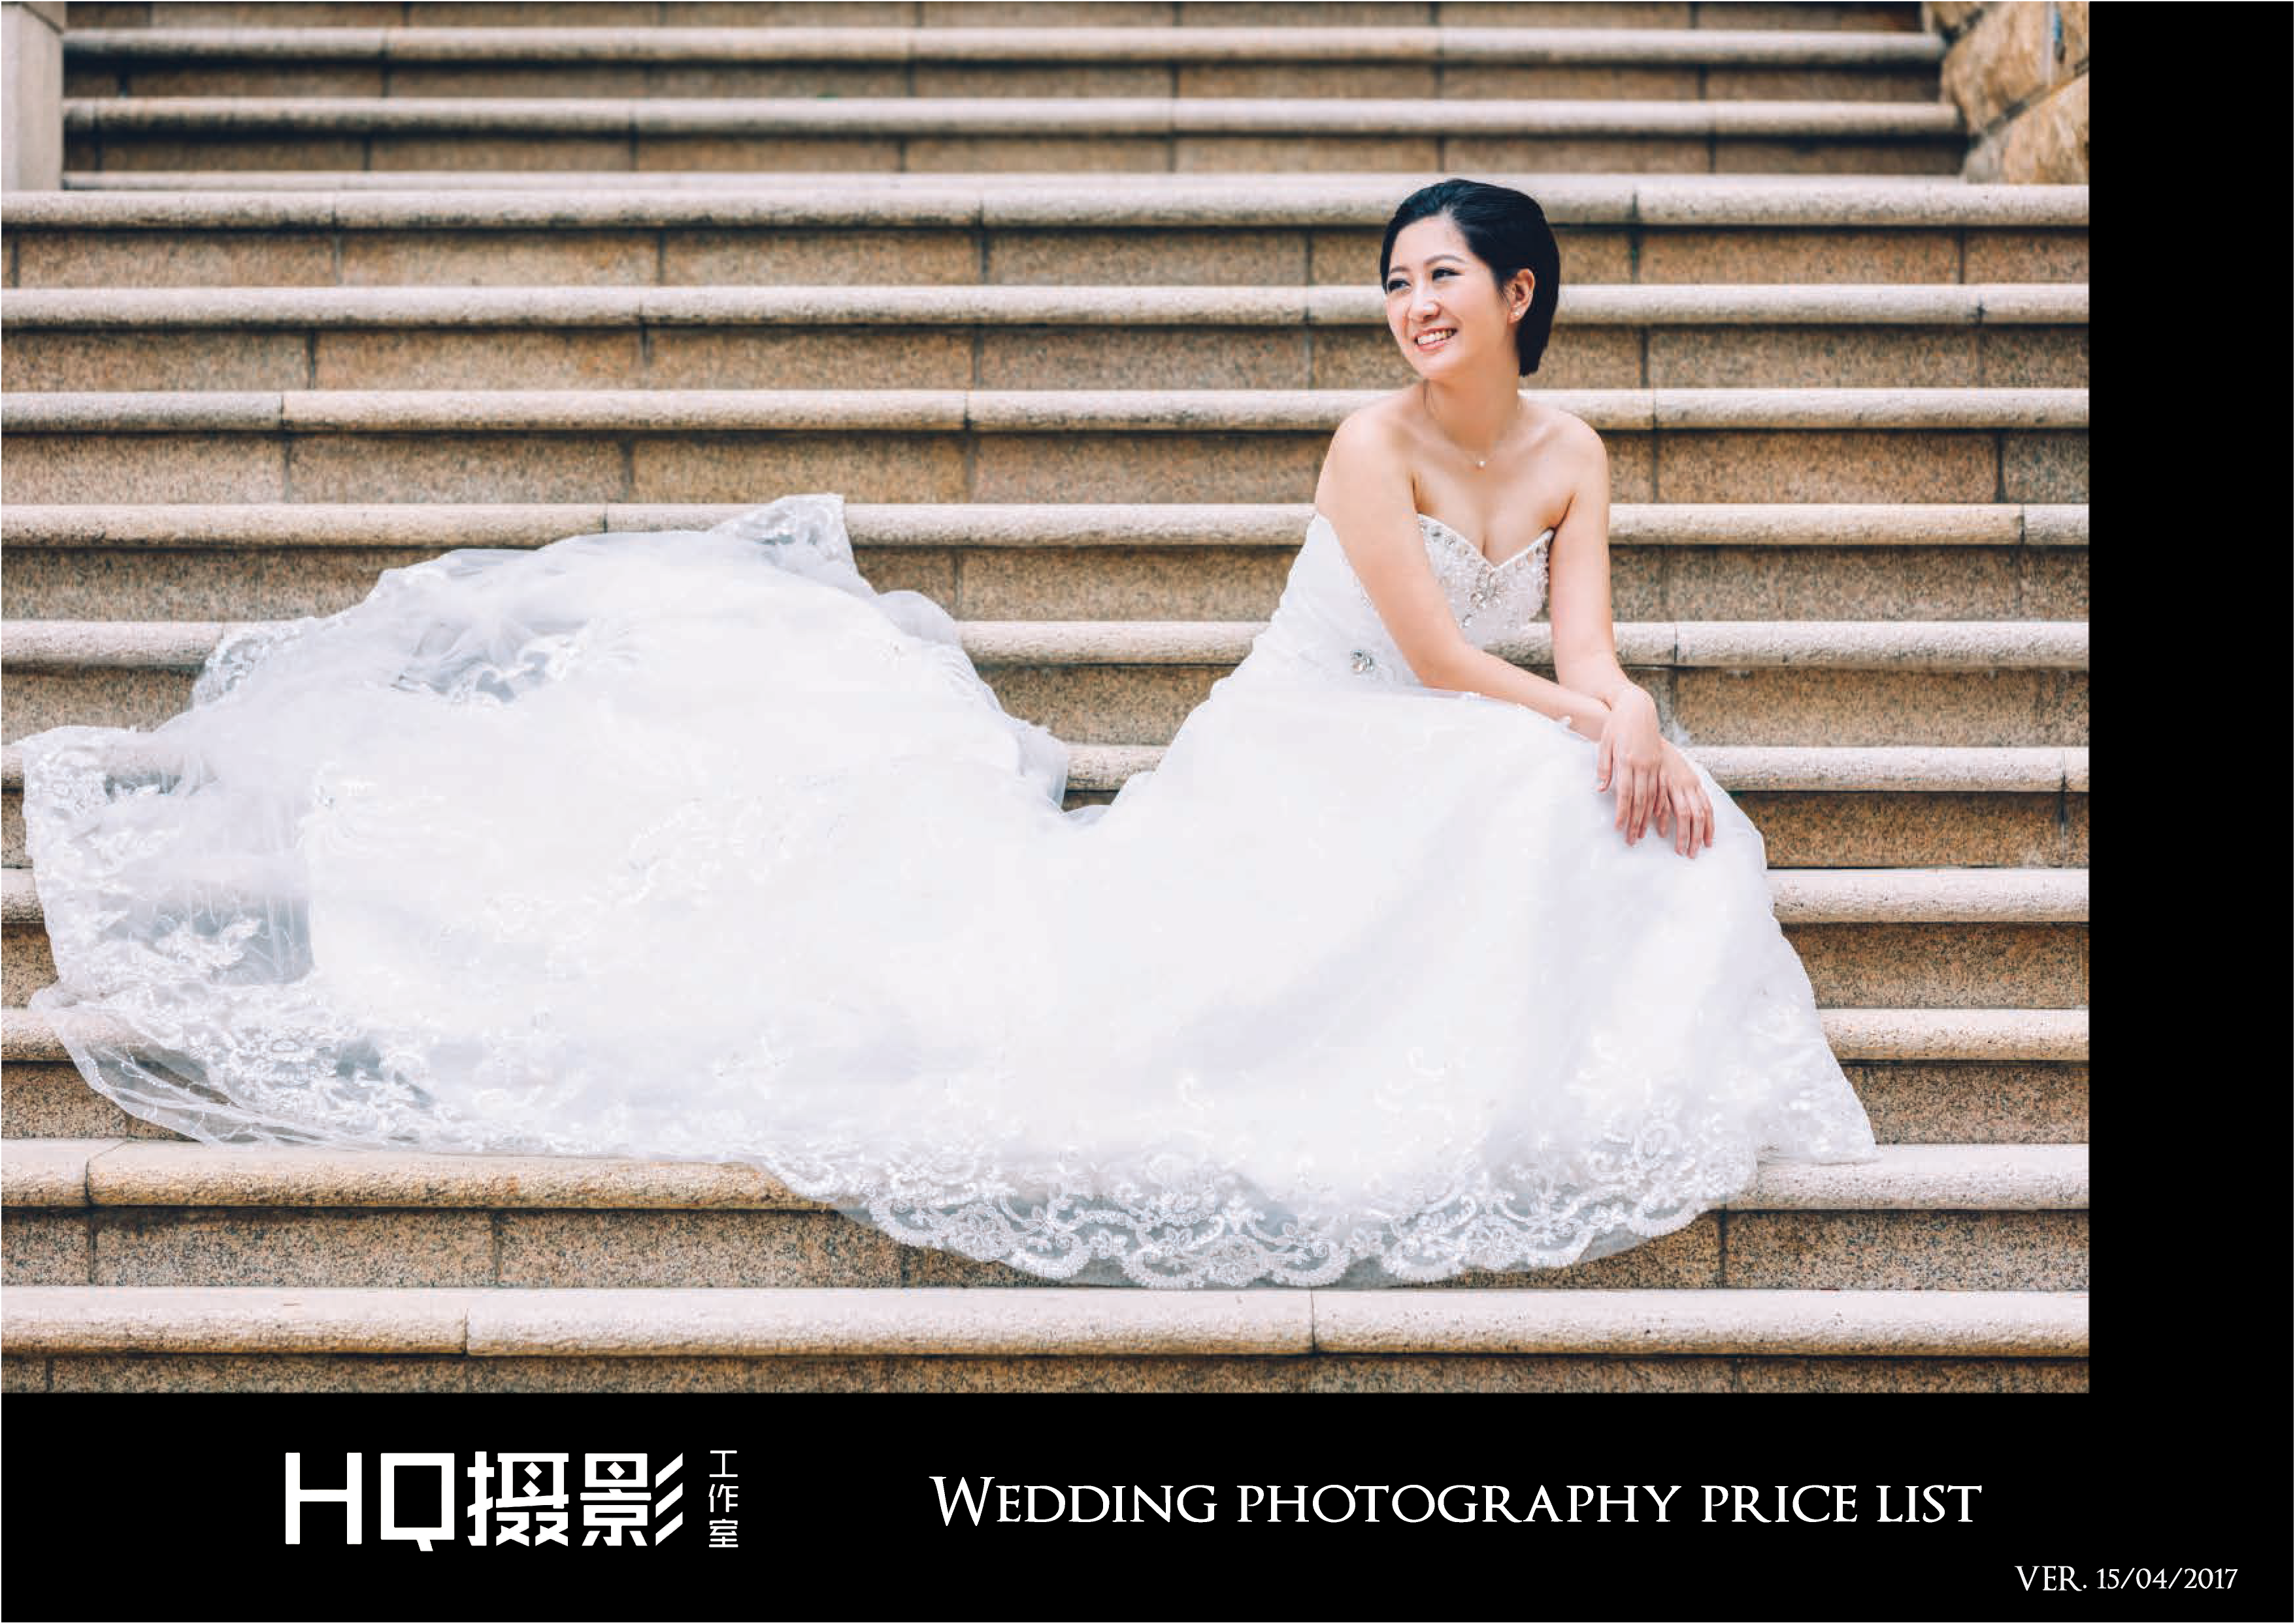 攝影師Matt HC Leung工作紀錄: 馬灣婚紗攝影